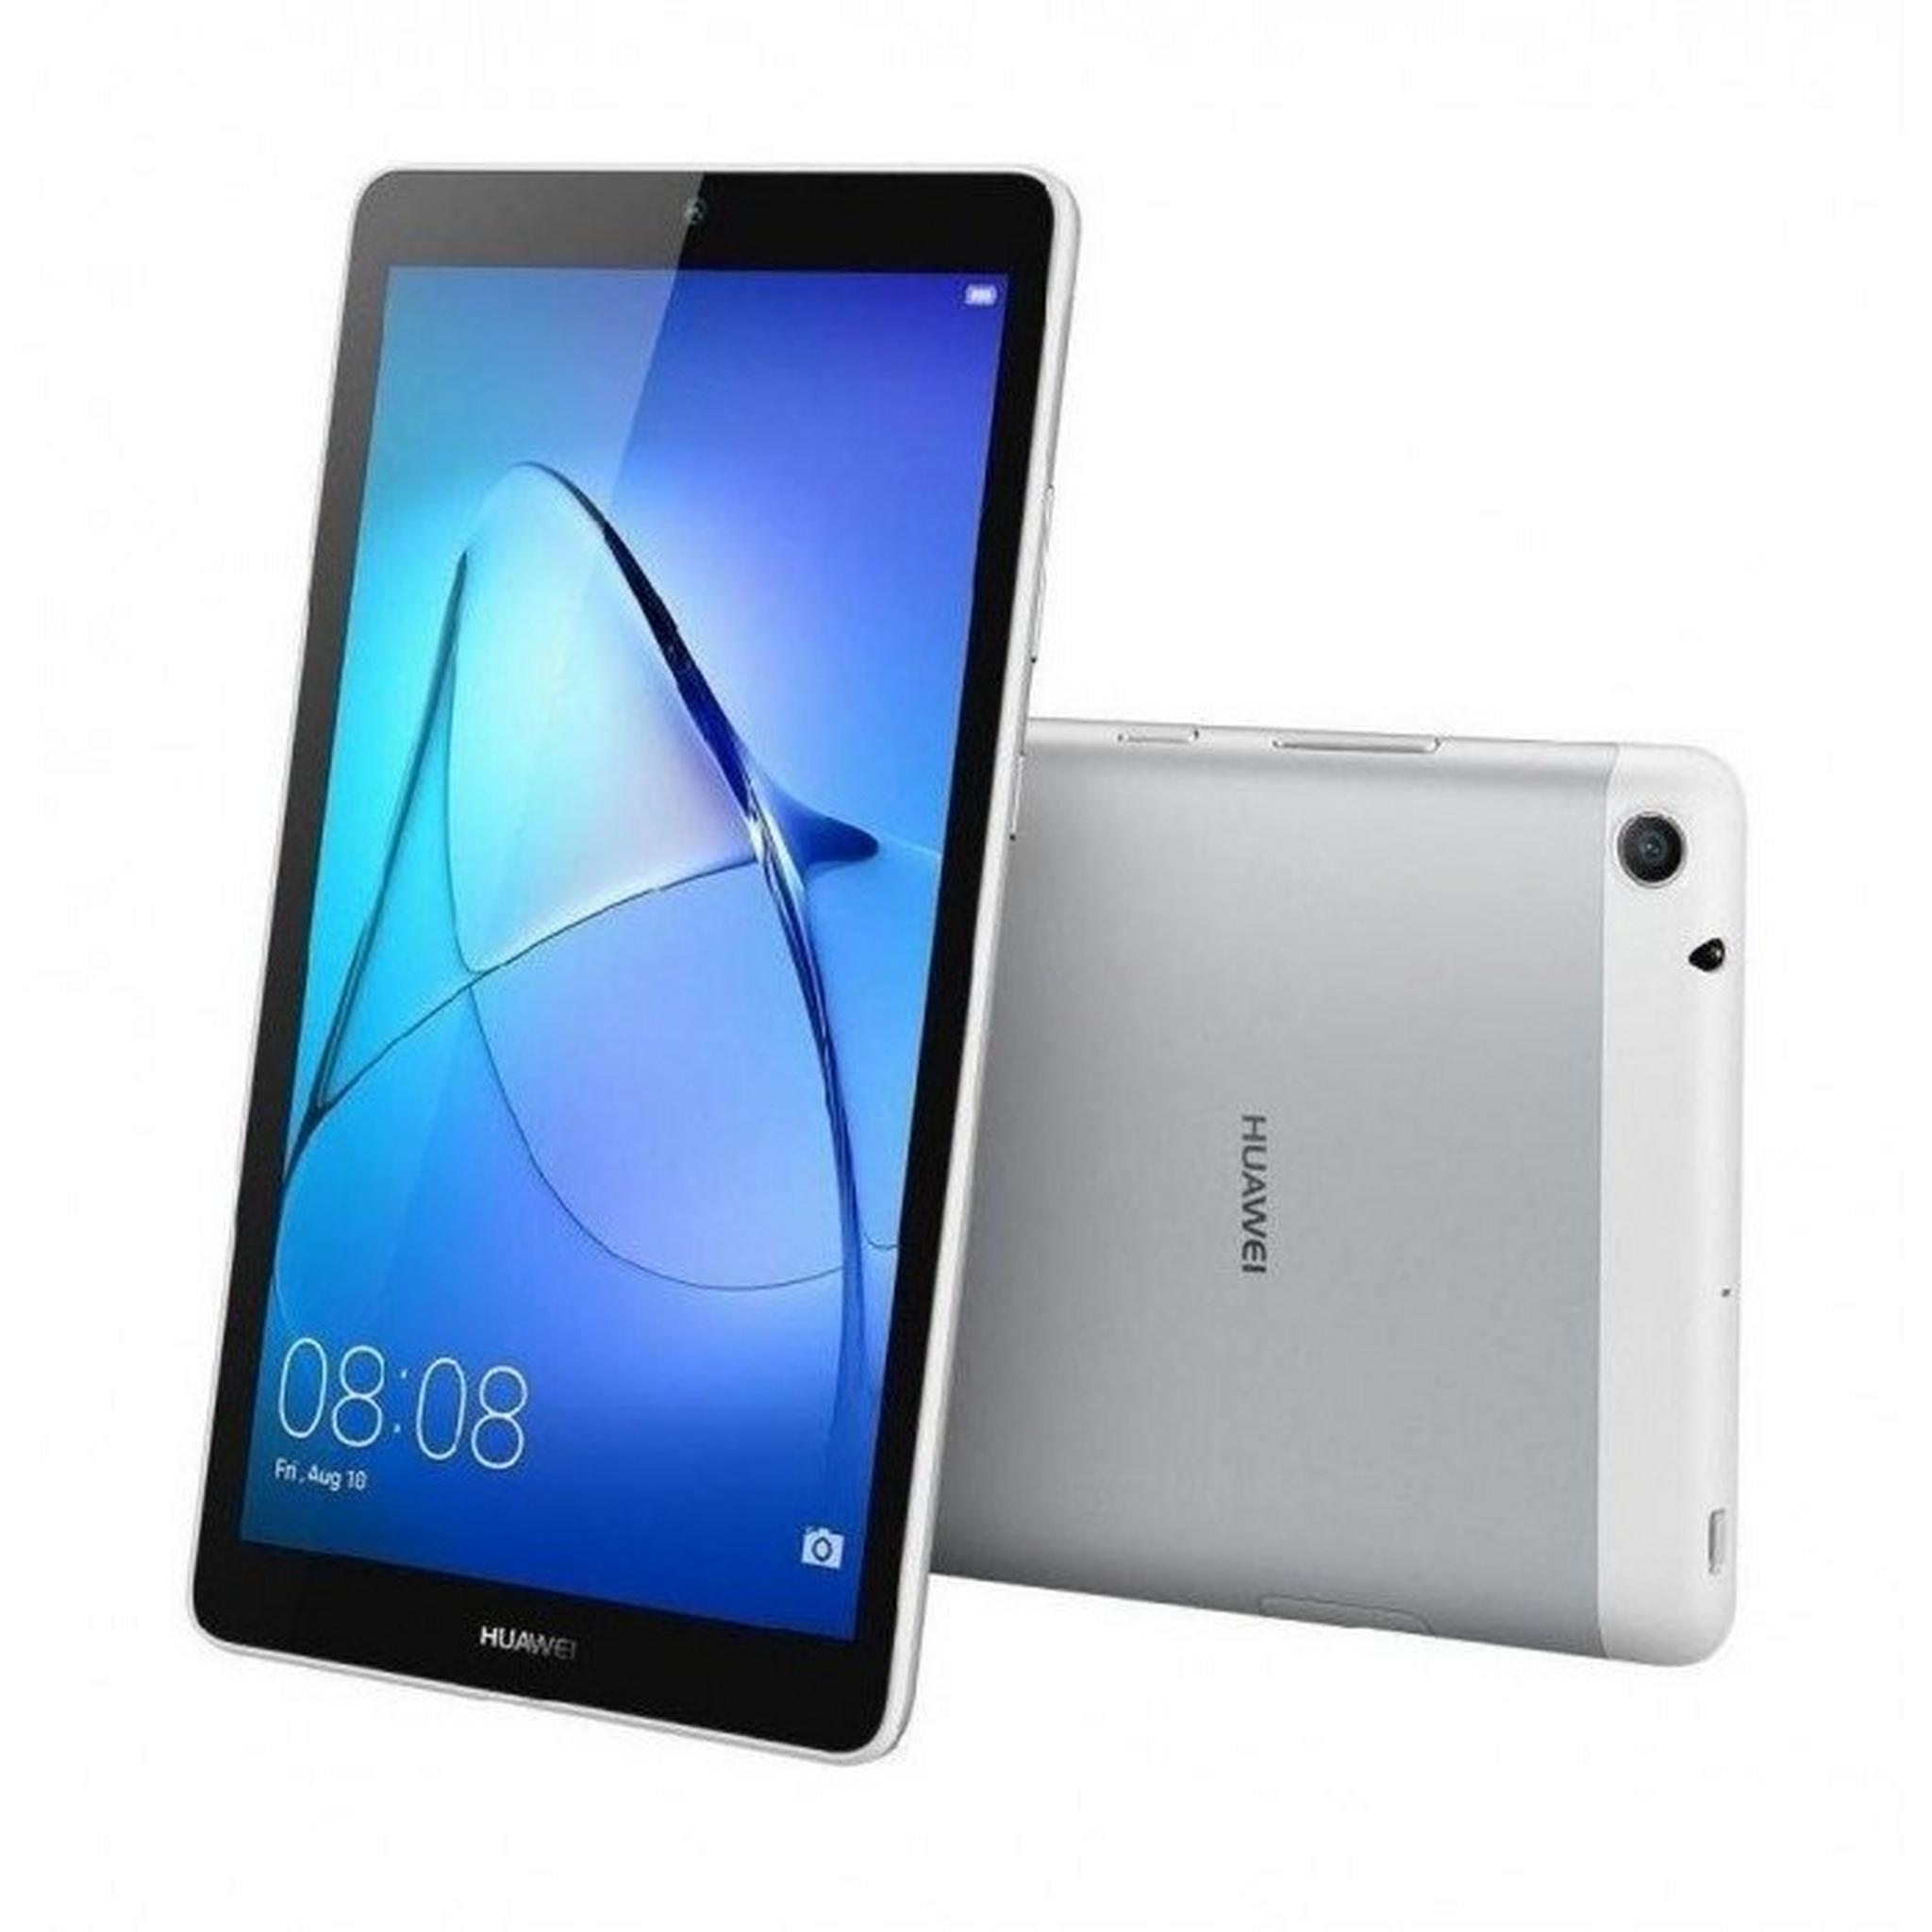 Huawei MediaPad T3 7" 16GB WiFi Only Kids Tablet - Silver